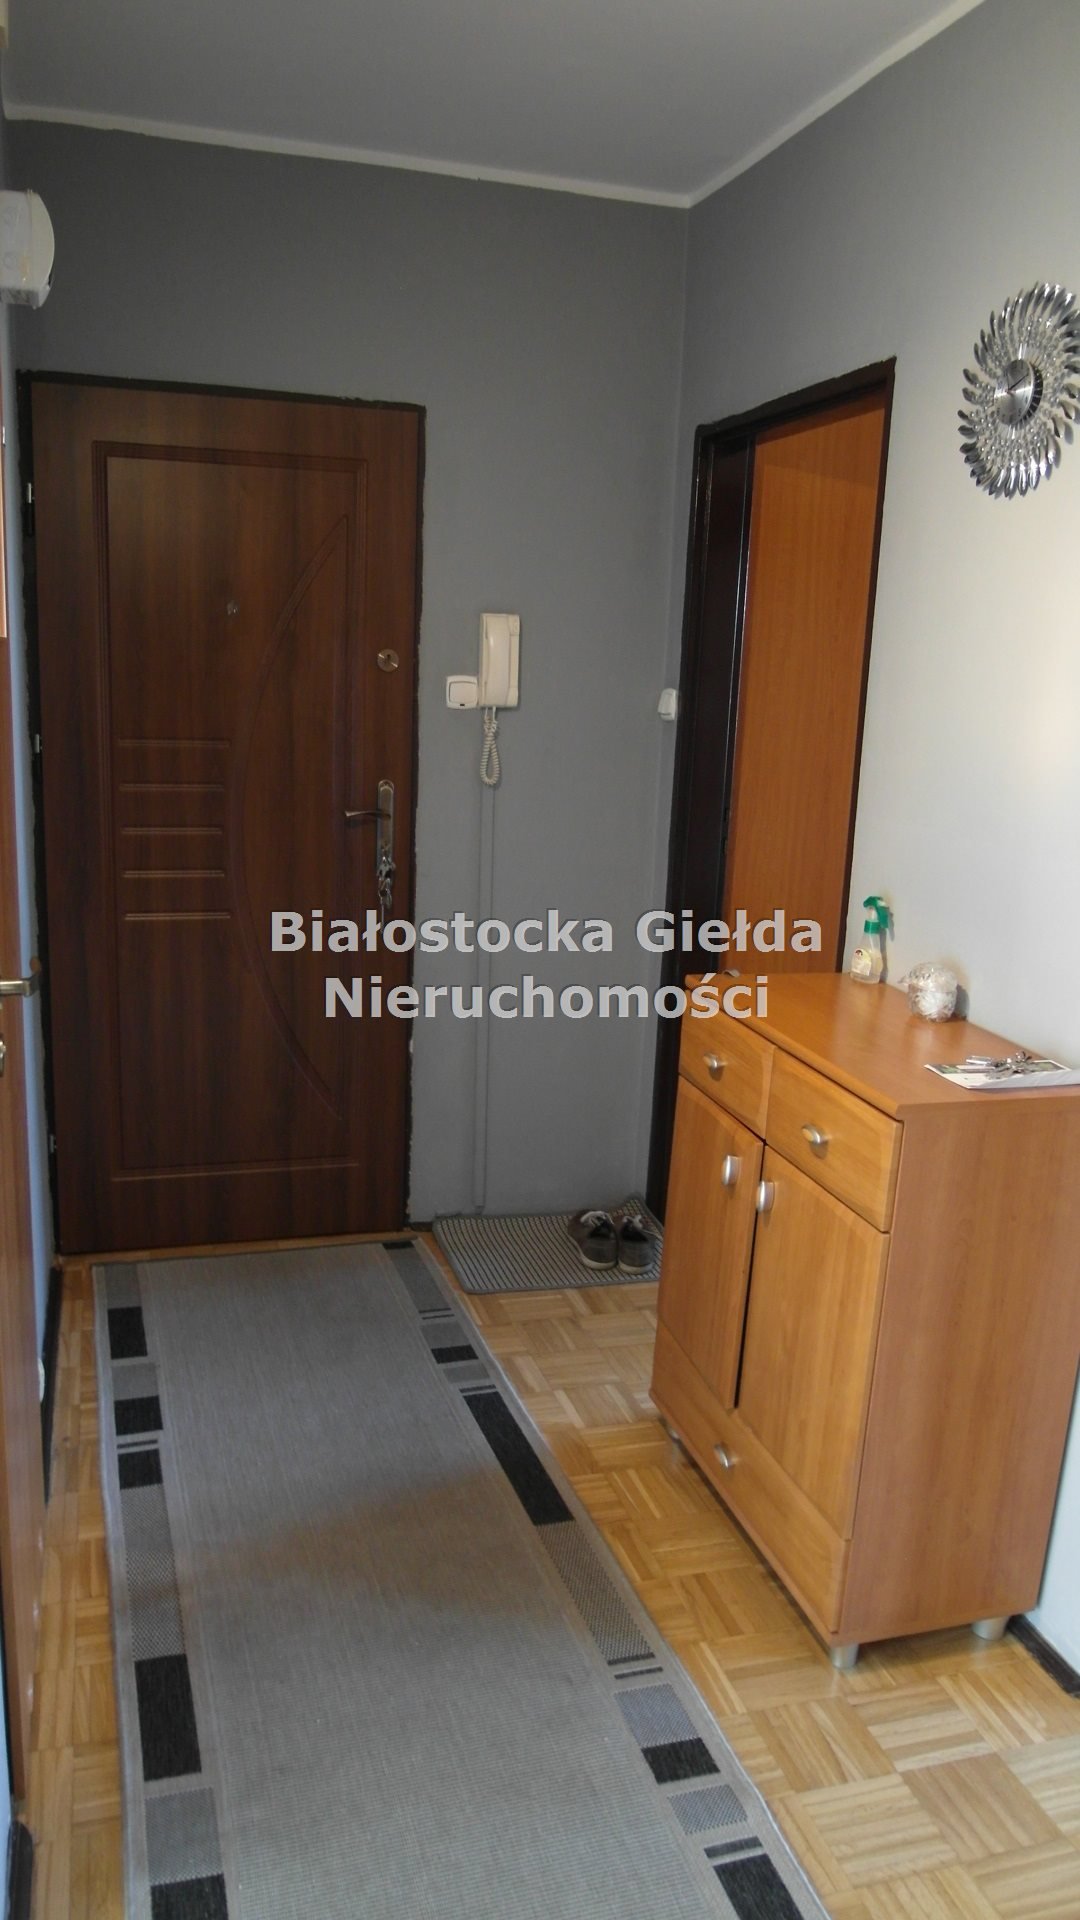 Mieszkanie trzypokojowe na wynajem Białystok, Zielone Wzgórza  61m2 Foto 9